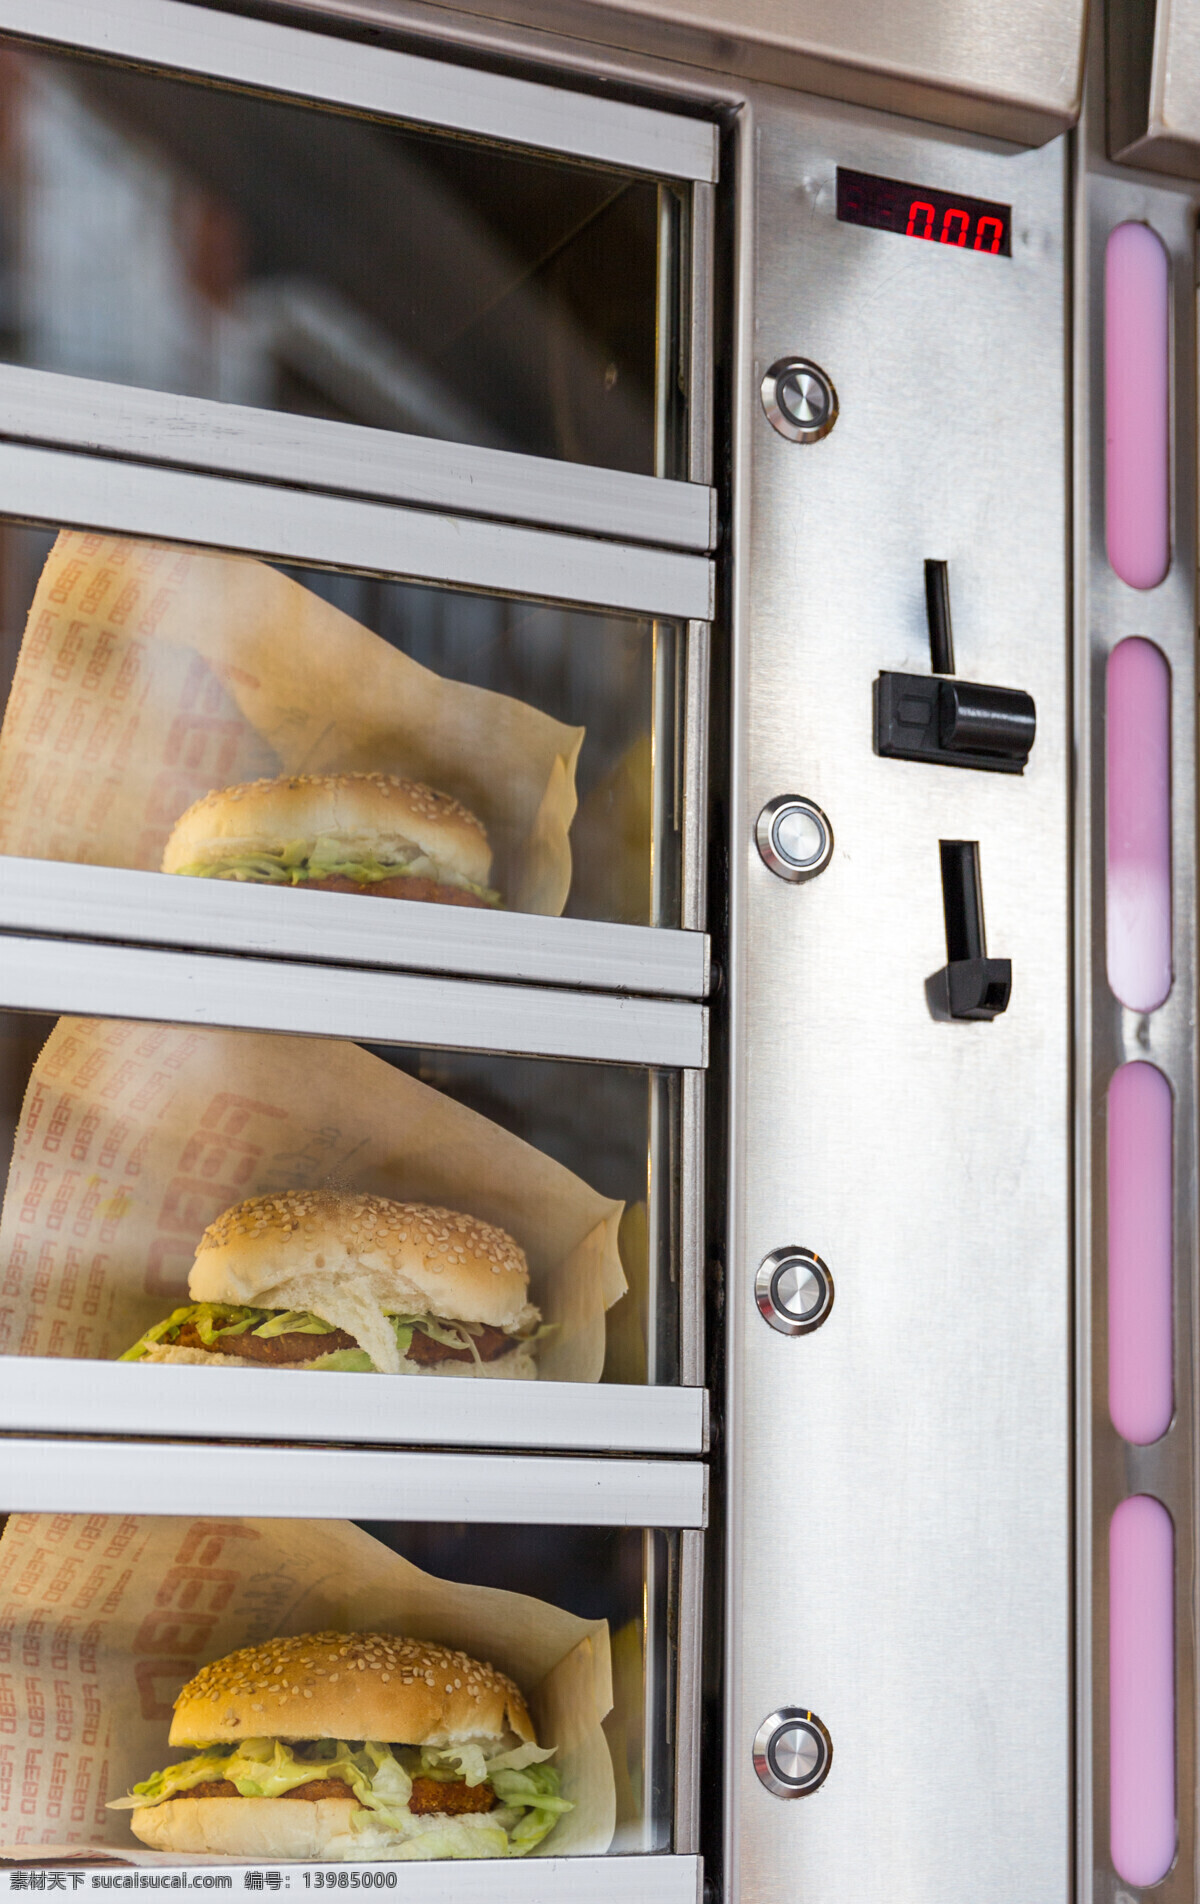 汉堡包 自动售货机 快餐 美食 食物 其他类别 生活百科